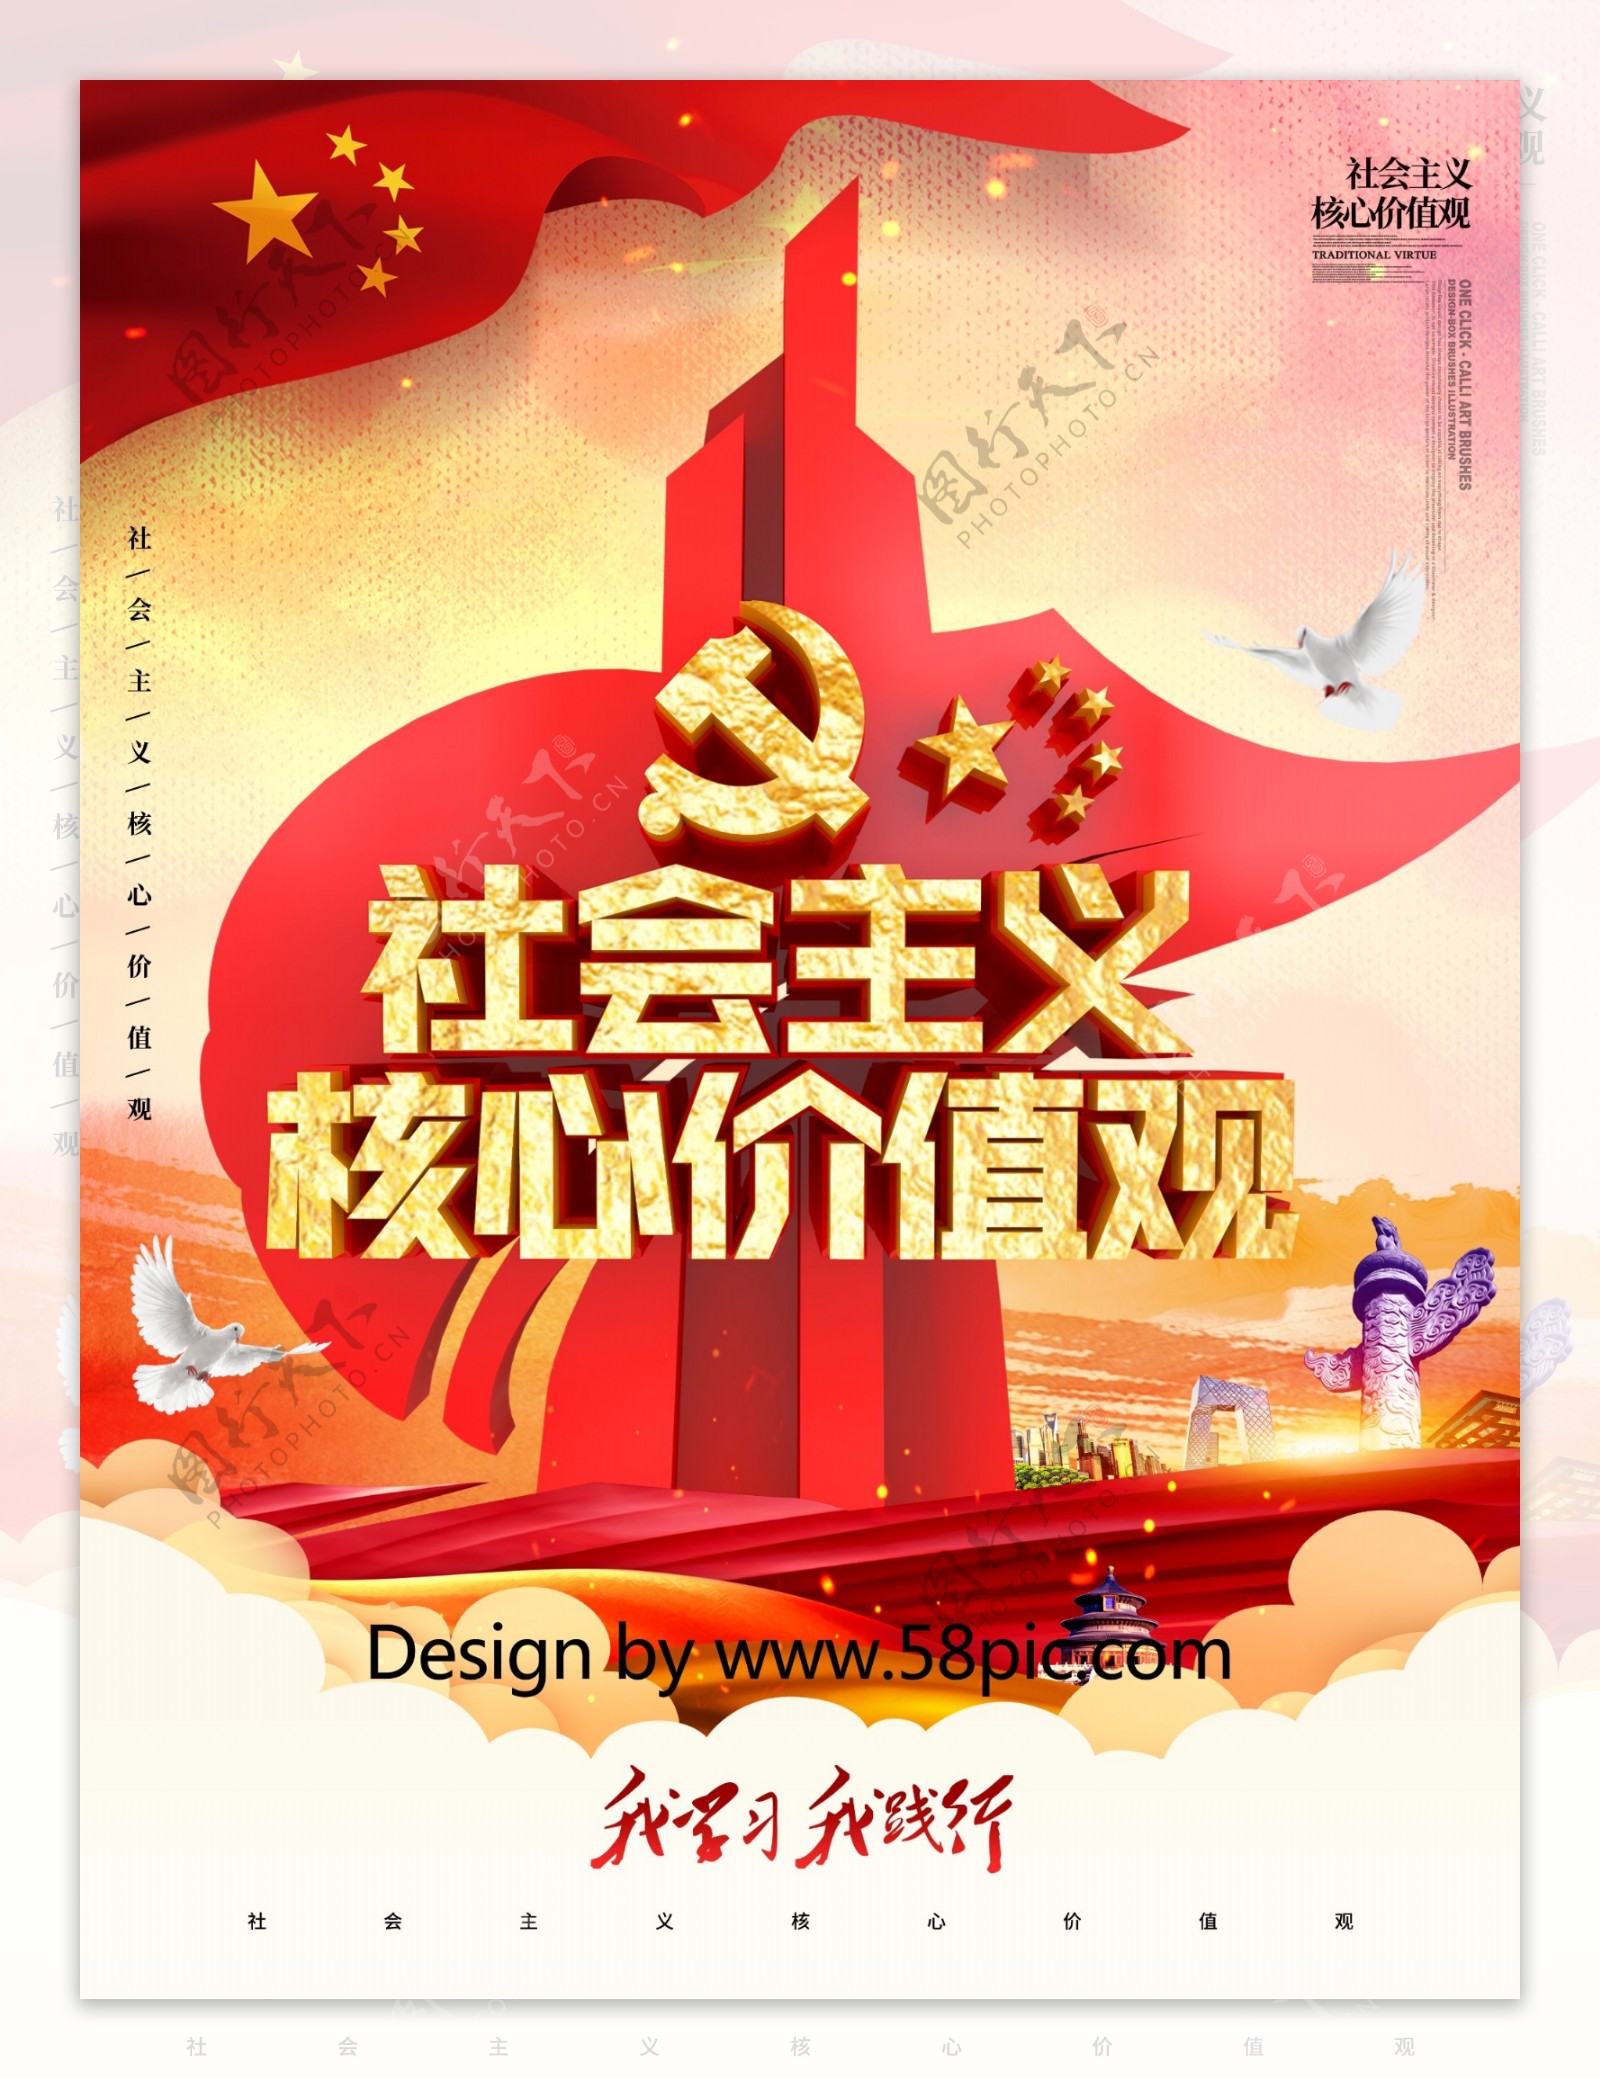 C4D创意社会主义核心价值观党建系列海报